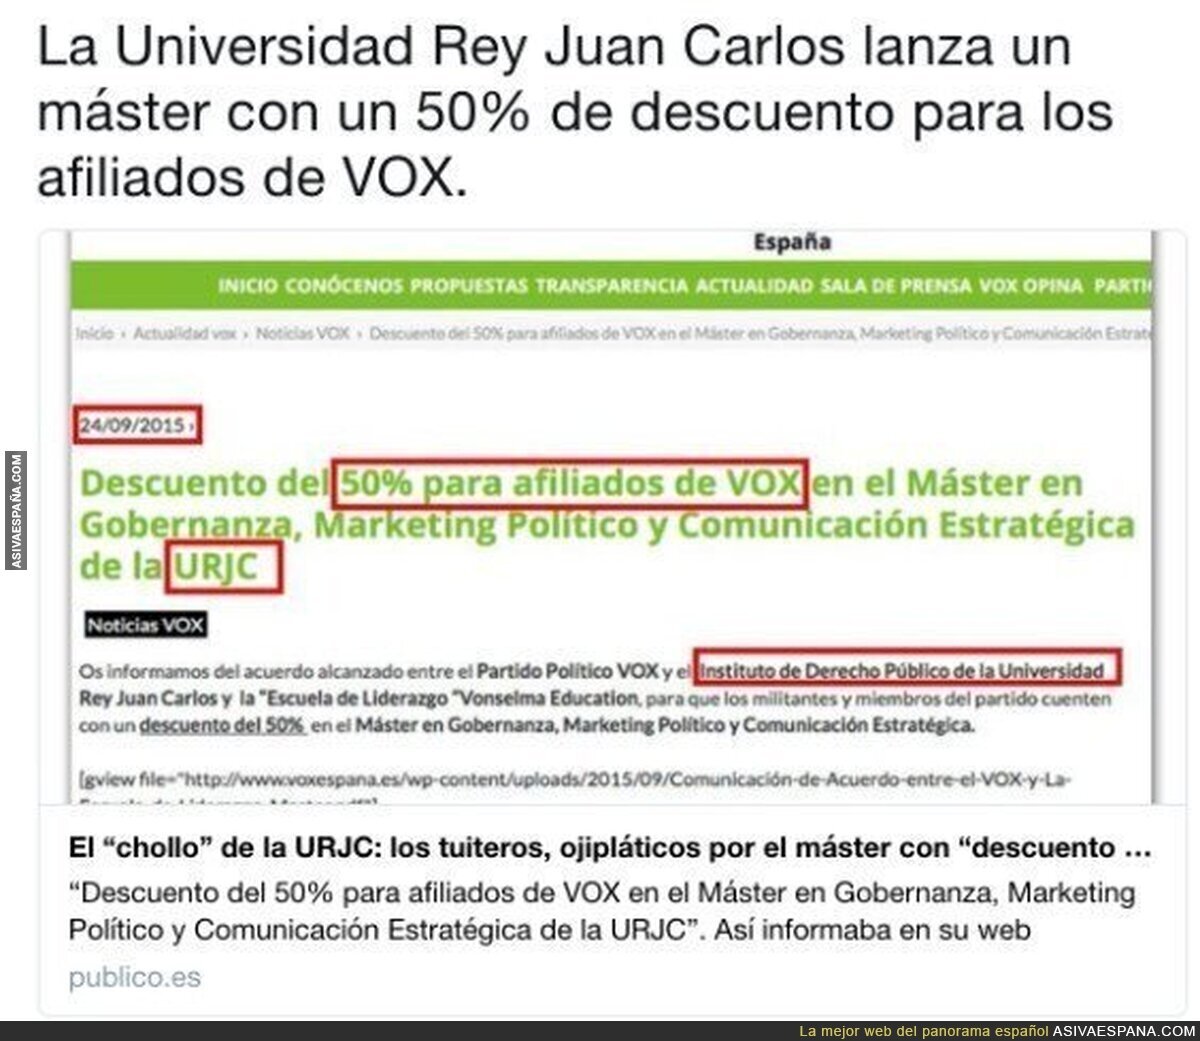 La Universidad Rey Juan Carlos y sus ofertas a VOX